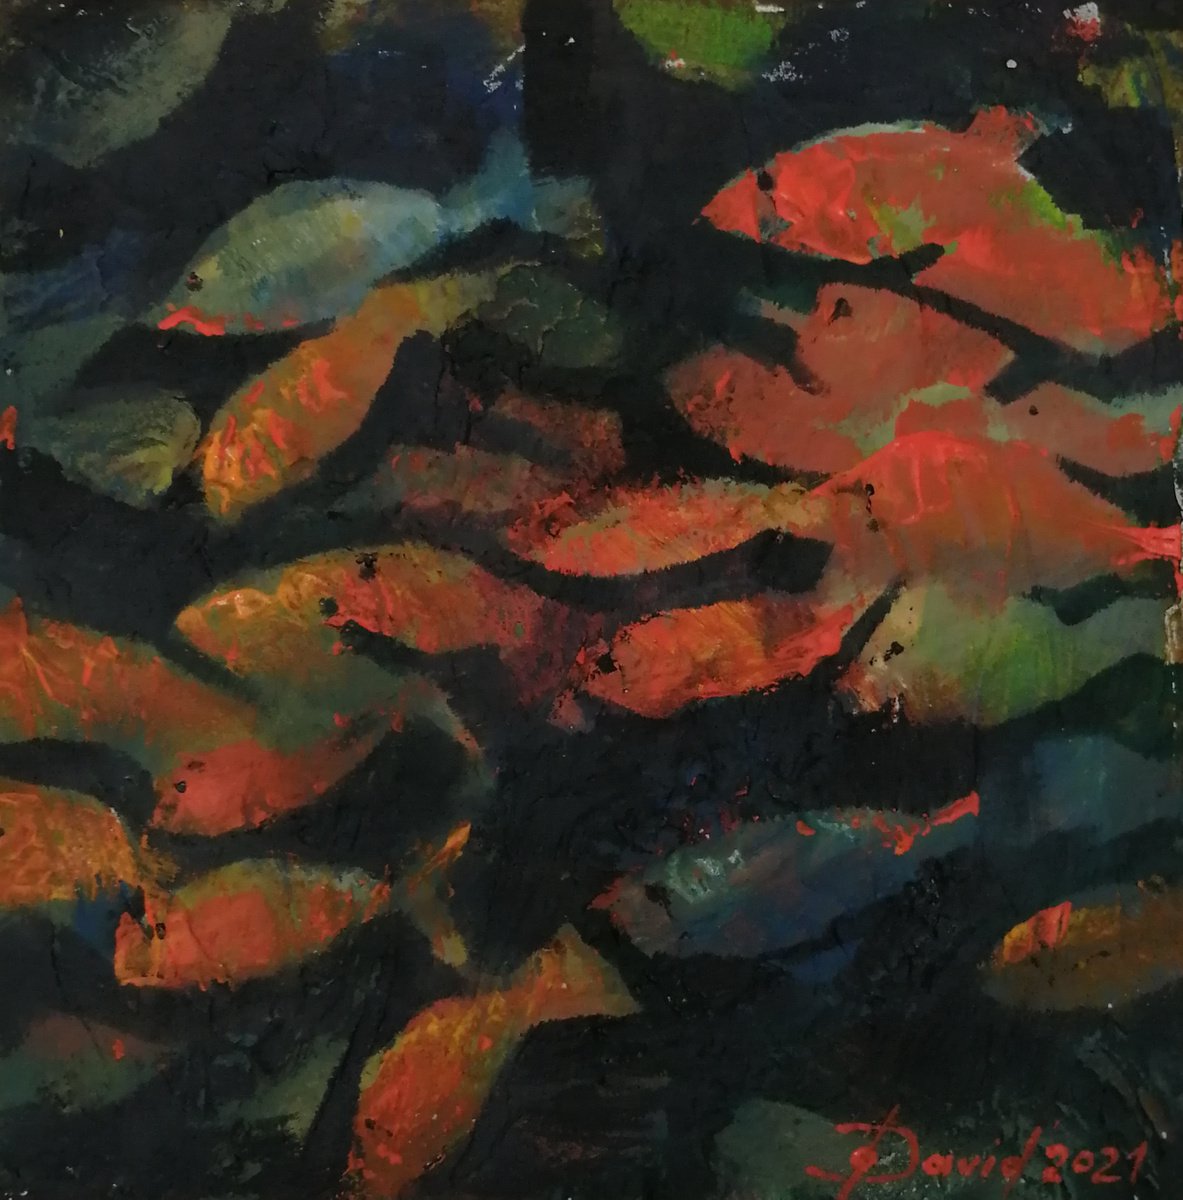 School of fish by Olga David